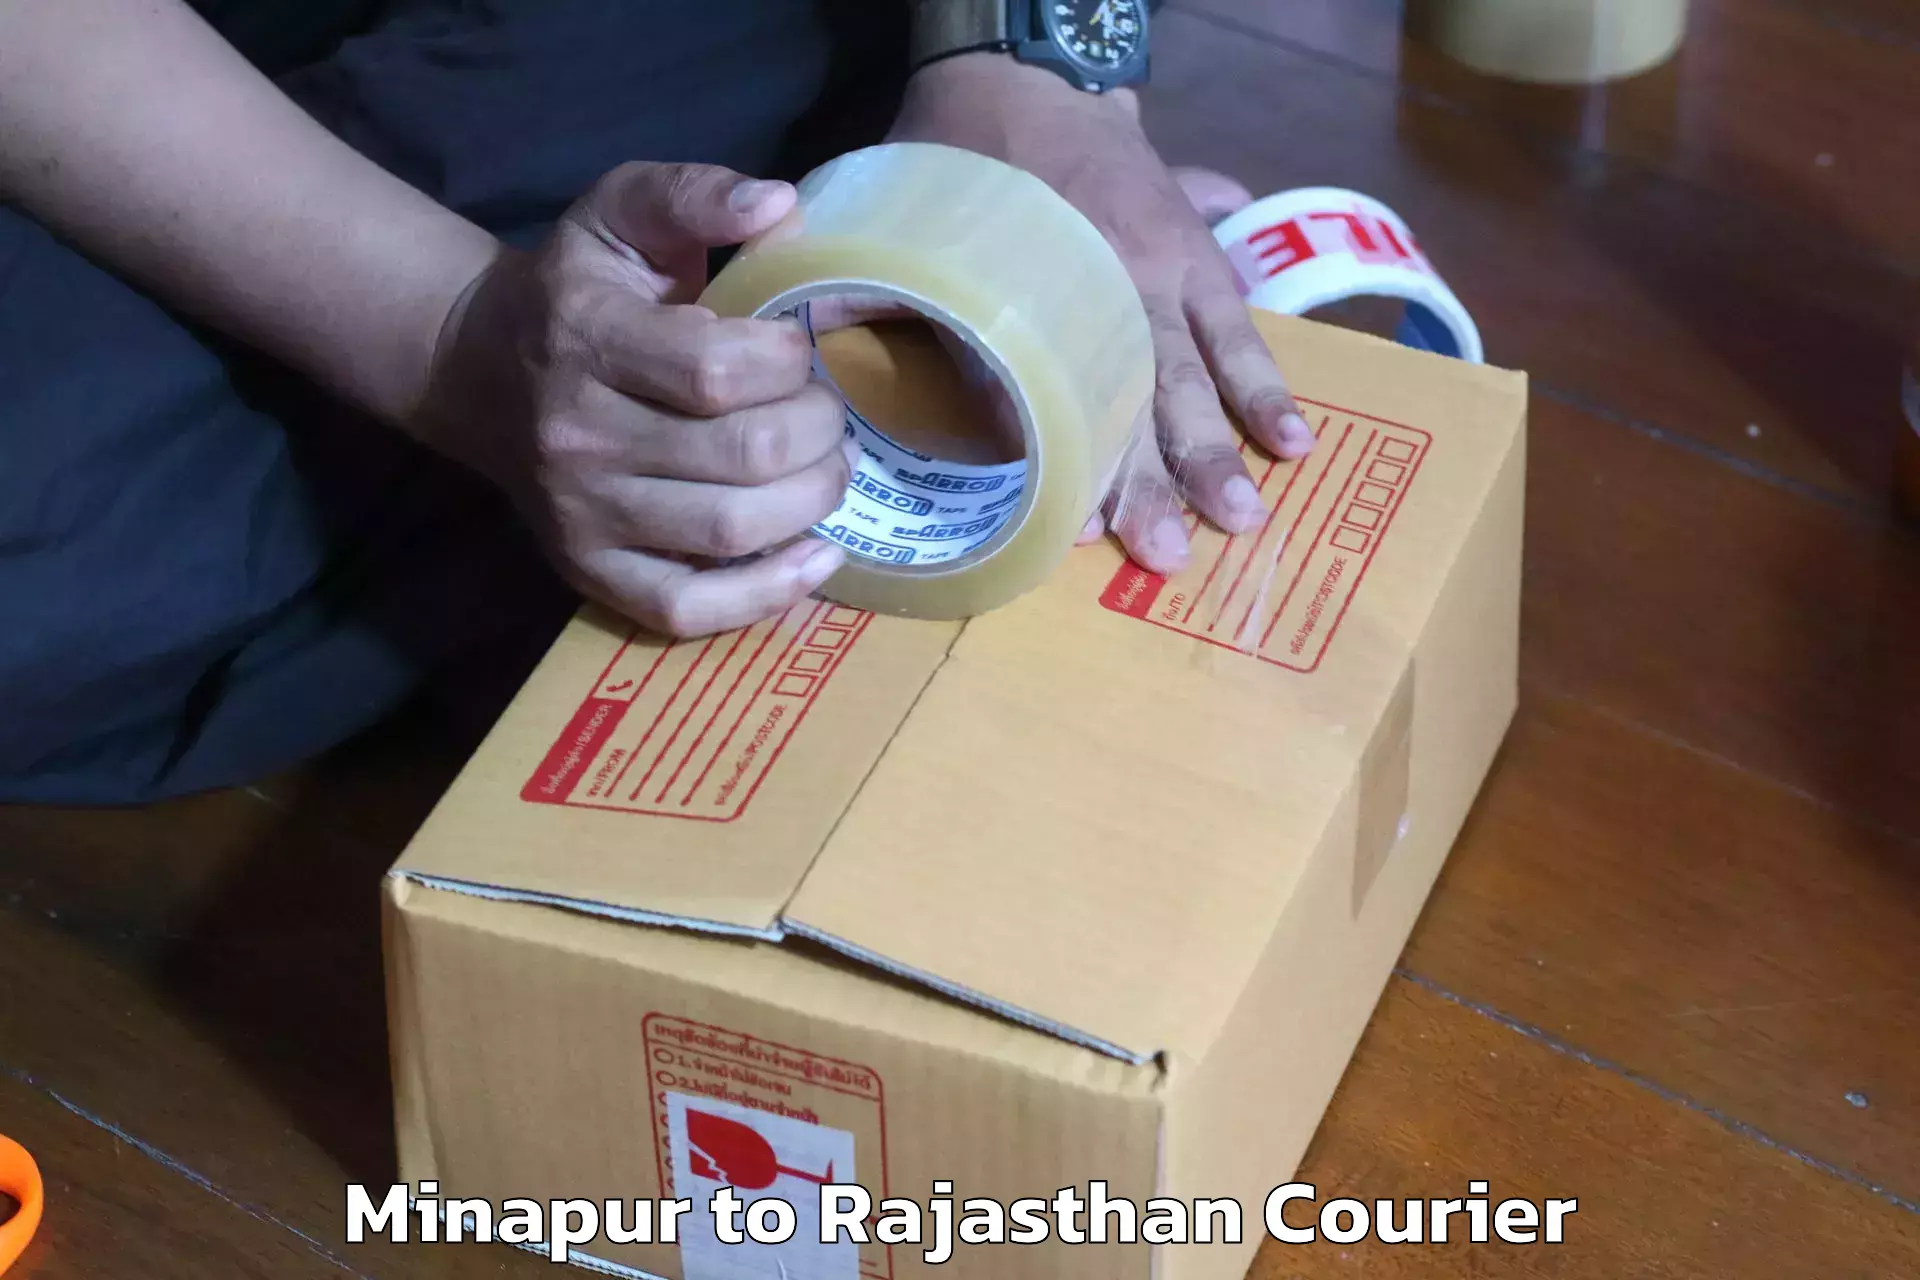 Moving and packing experts Minapur to Bhawani Mandi